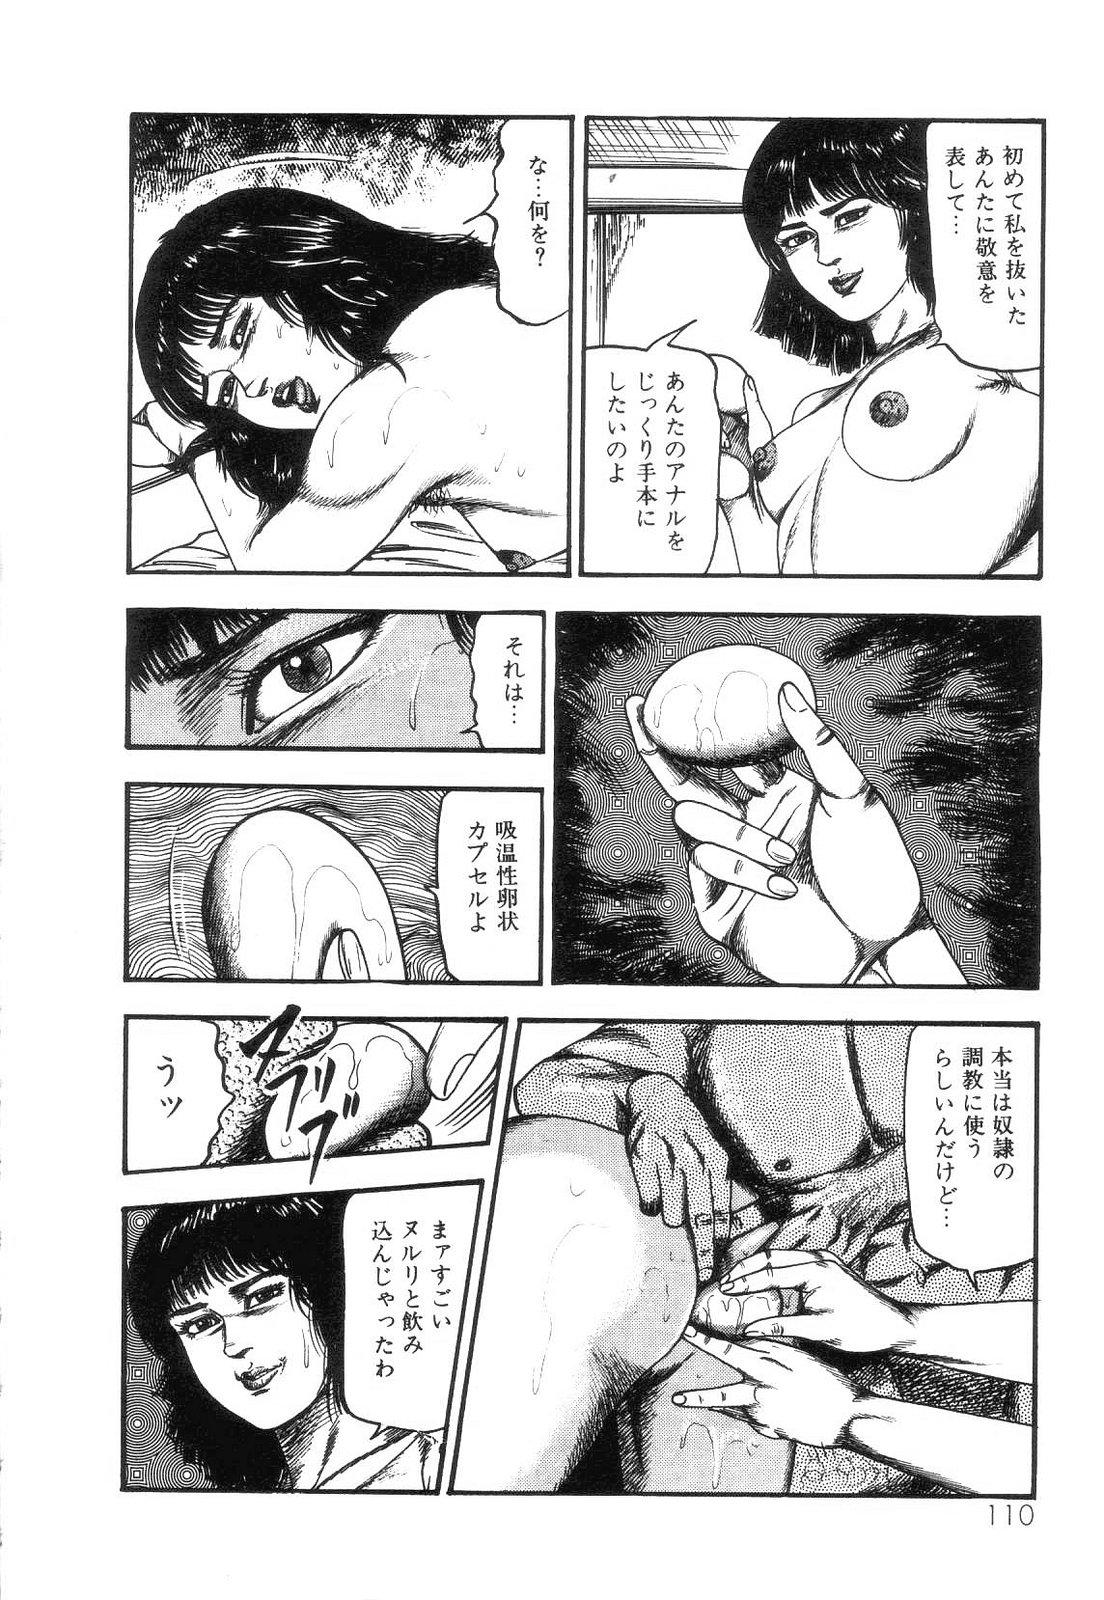 Shiro no Mokushiroku Vol. 4 - Bichiku Karen no Shou 111